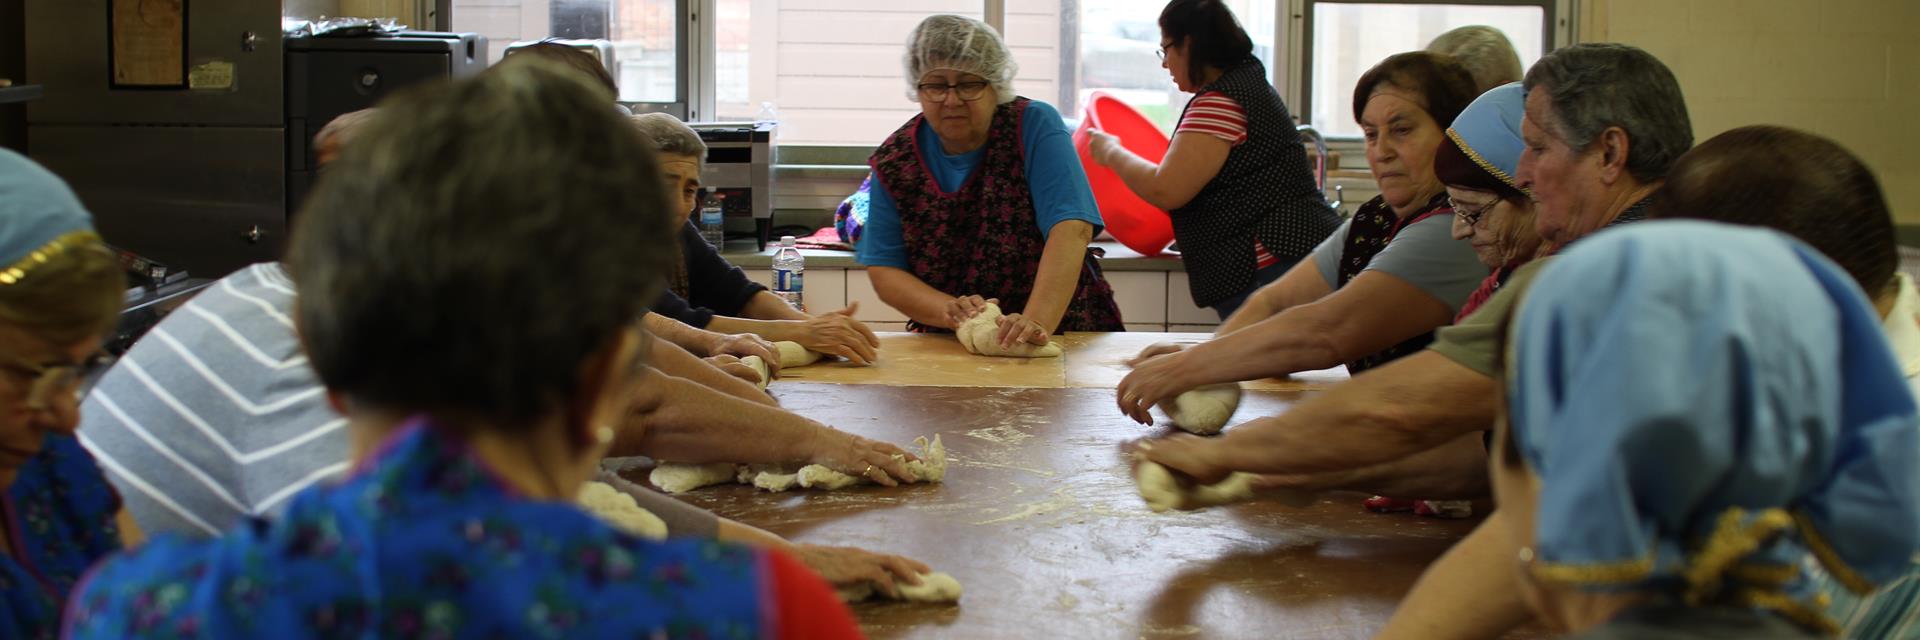 Women kneading bread.